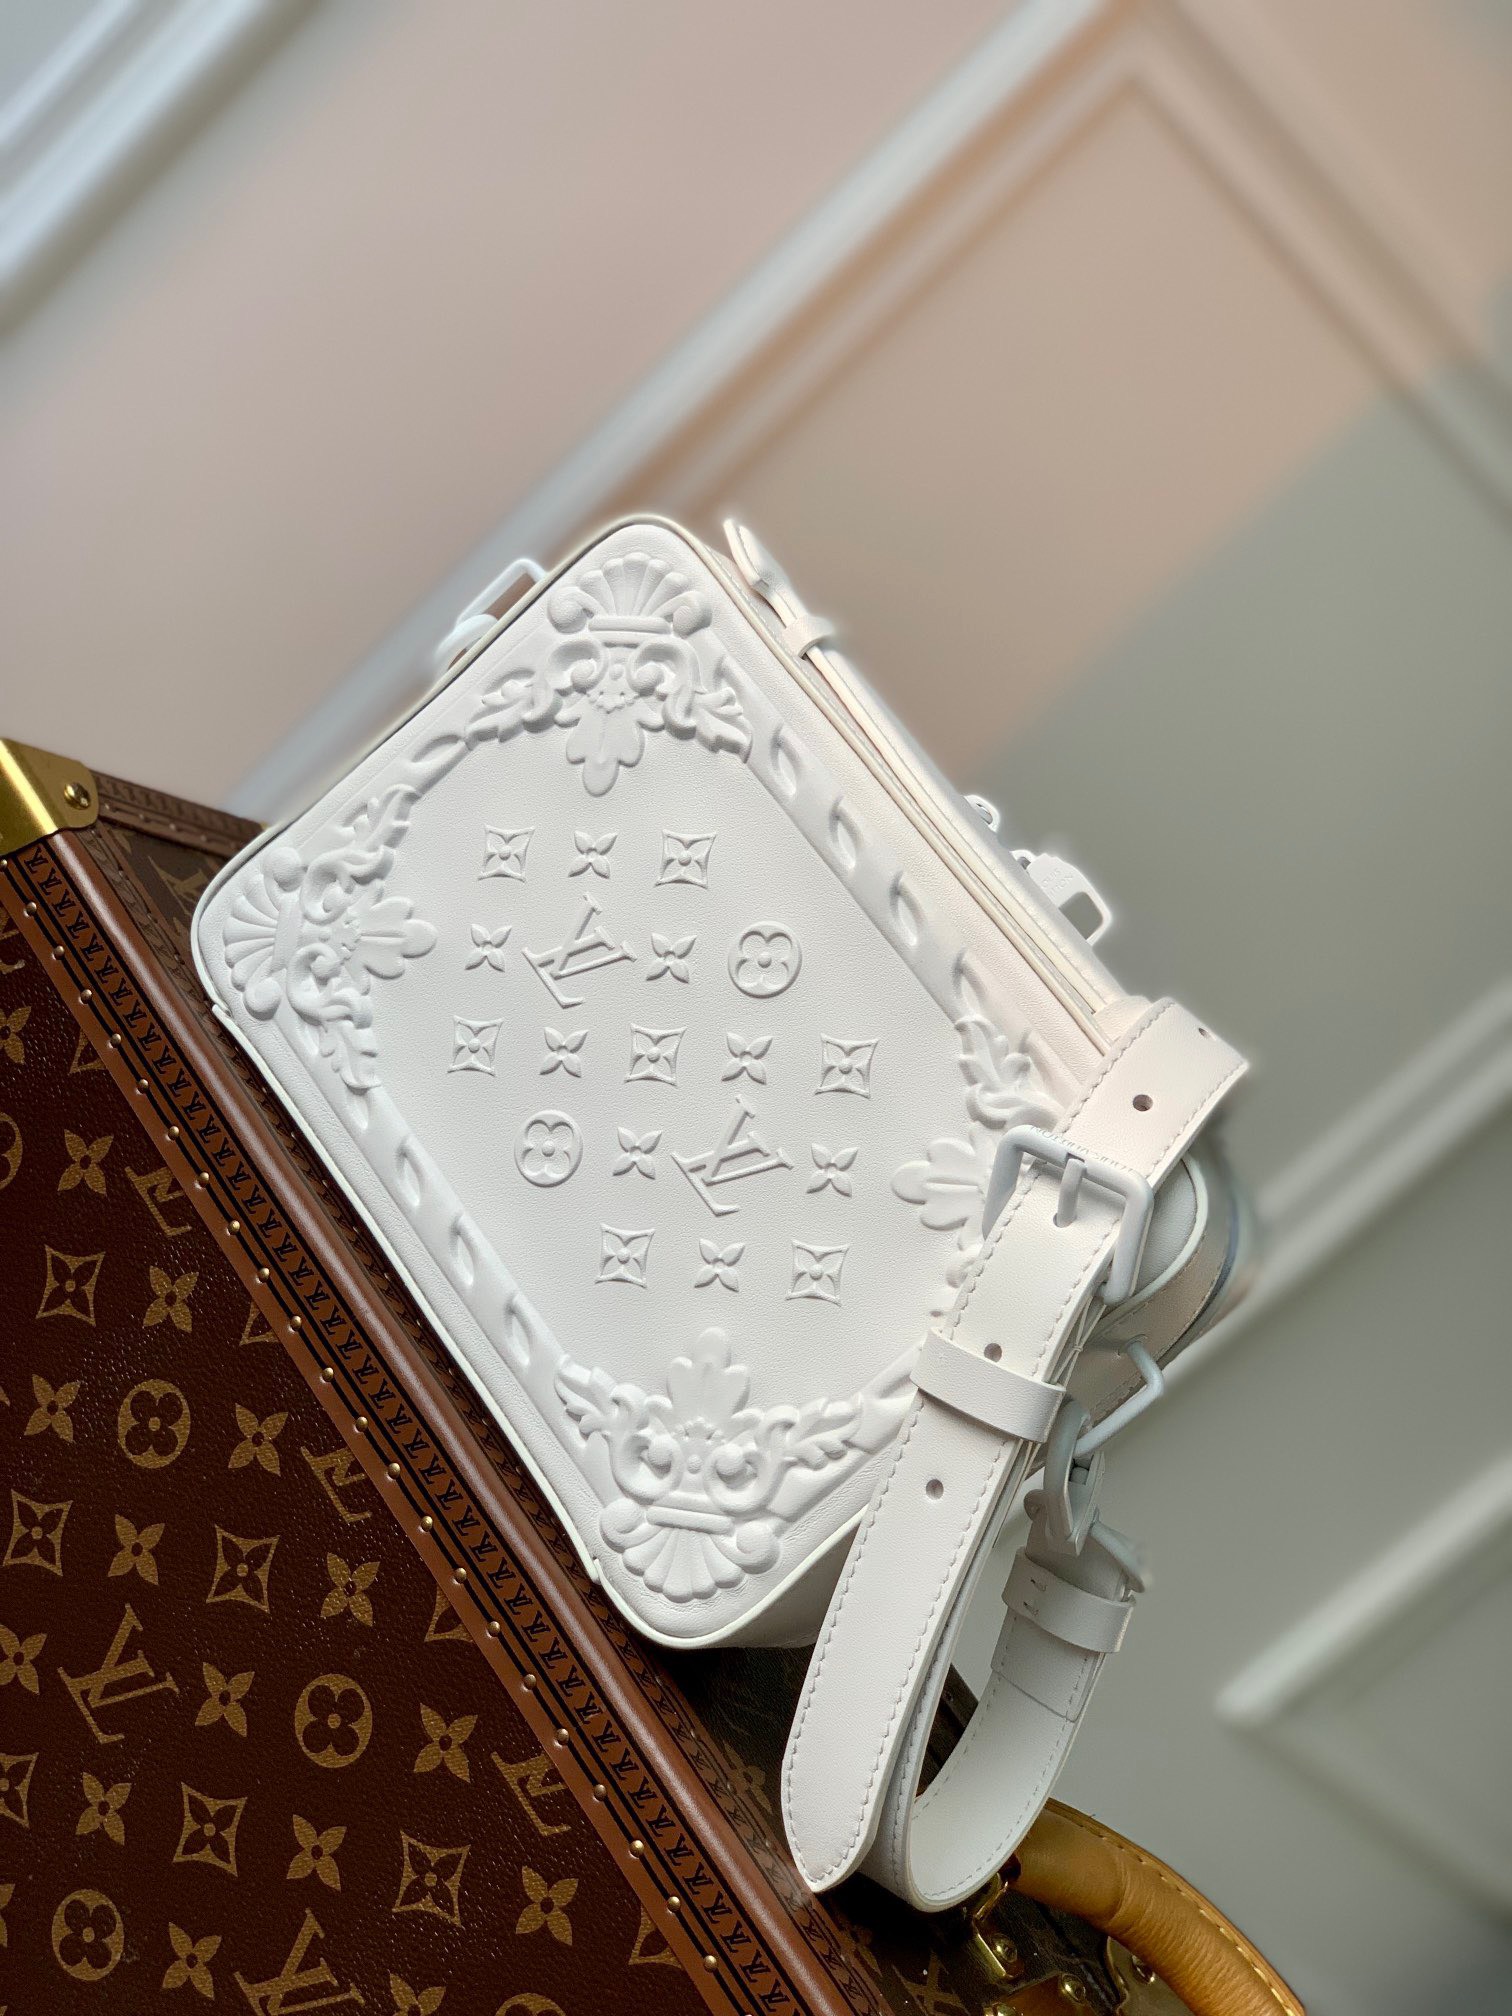 Túi xách nữ Louis Vuitton siêu cấp